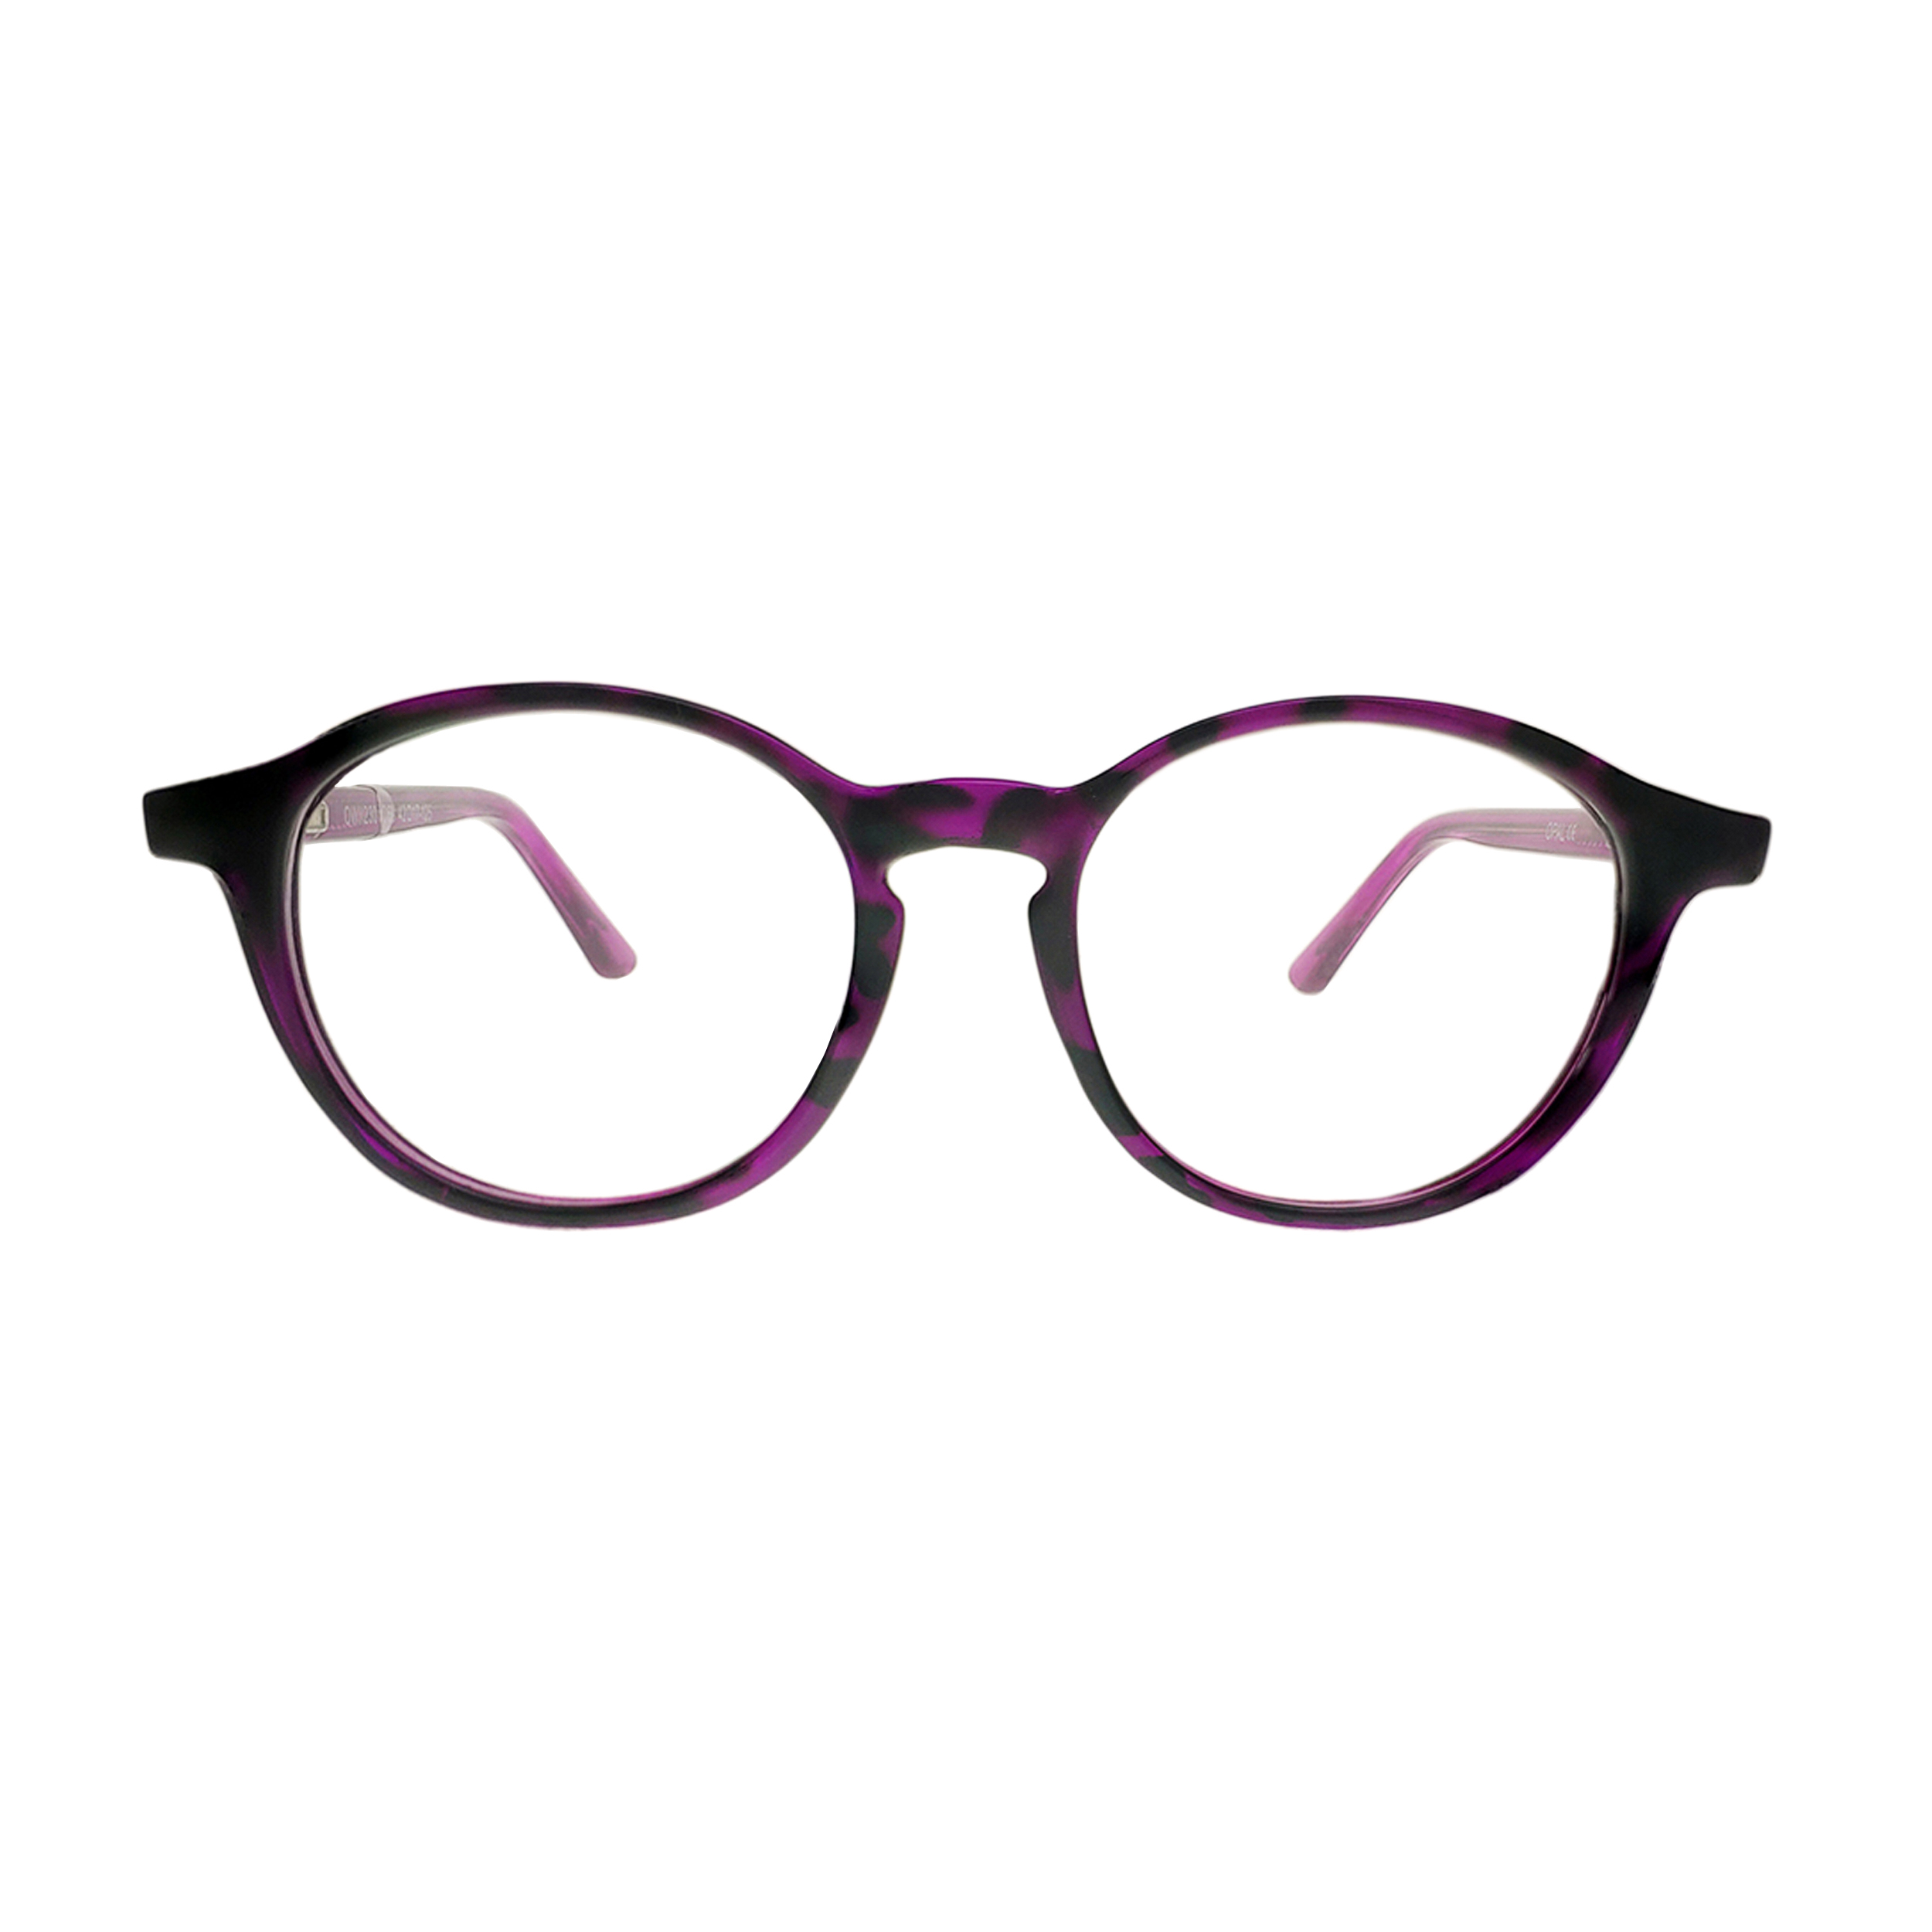 فریم عینک طبی بچگانه اوپال مدل 1529 - OWII230C68 - 42.17.125